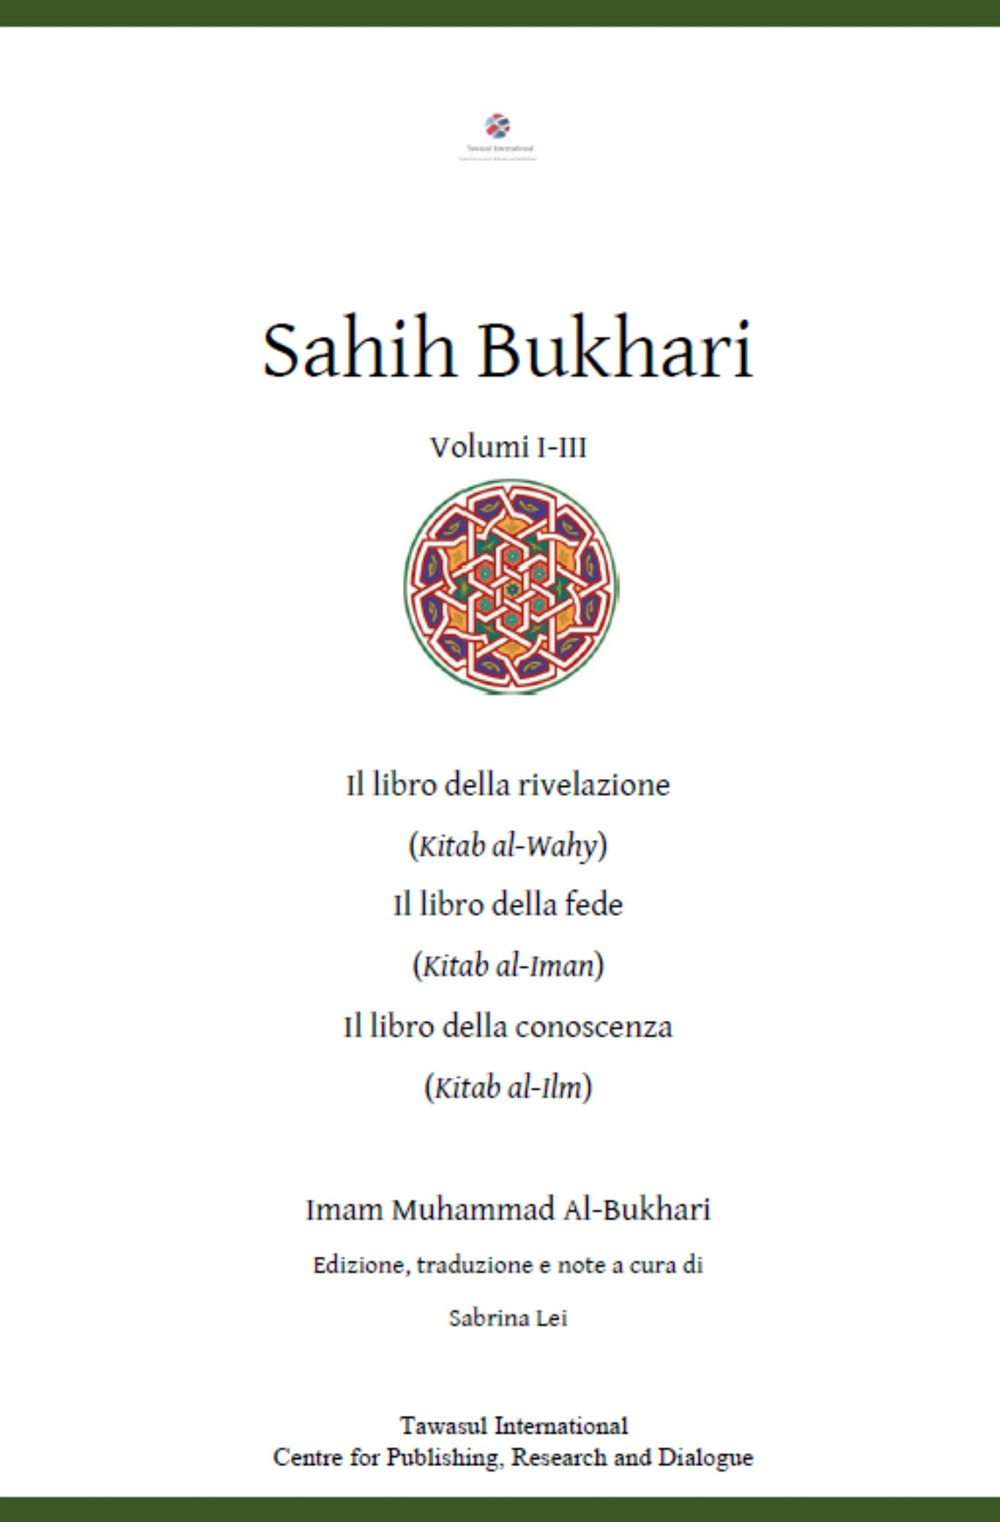 Sahih Bukhari. Il Libro della rivelazione, il Libro della fede, il Libro della conoscenza